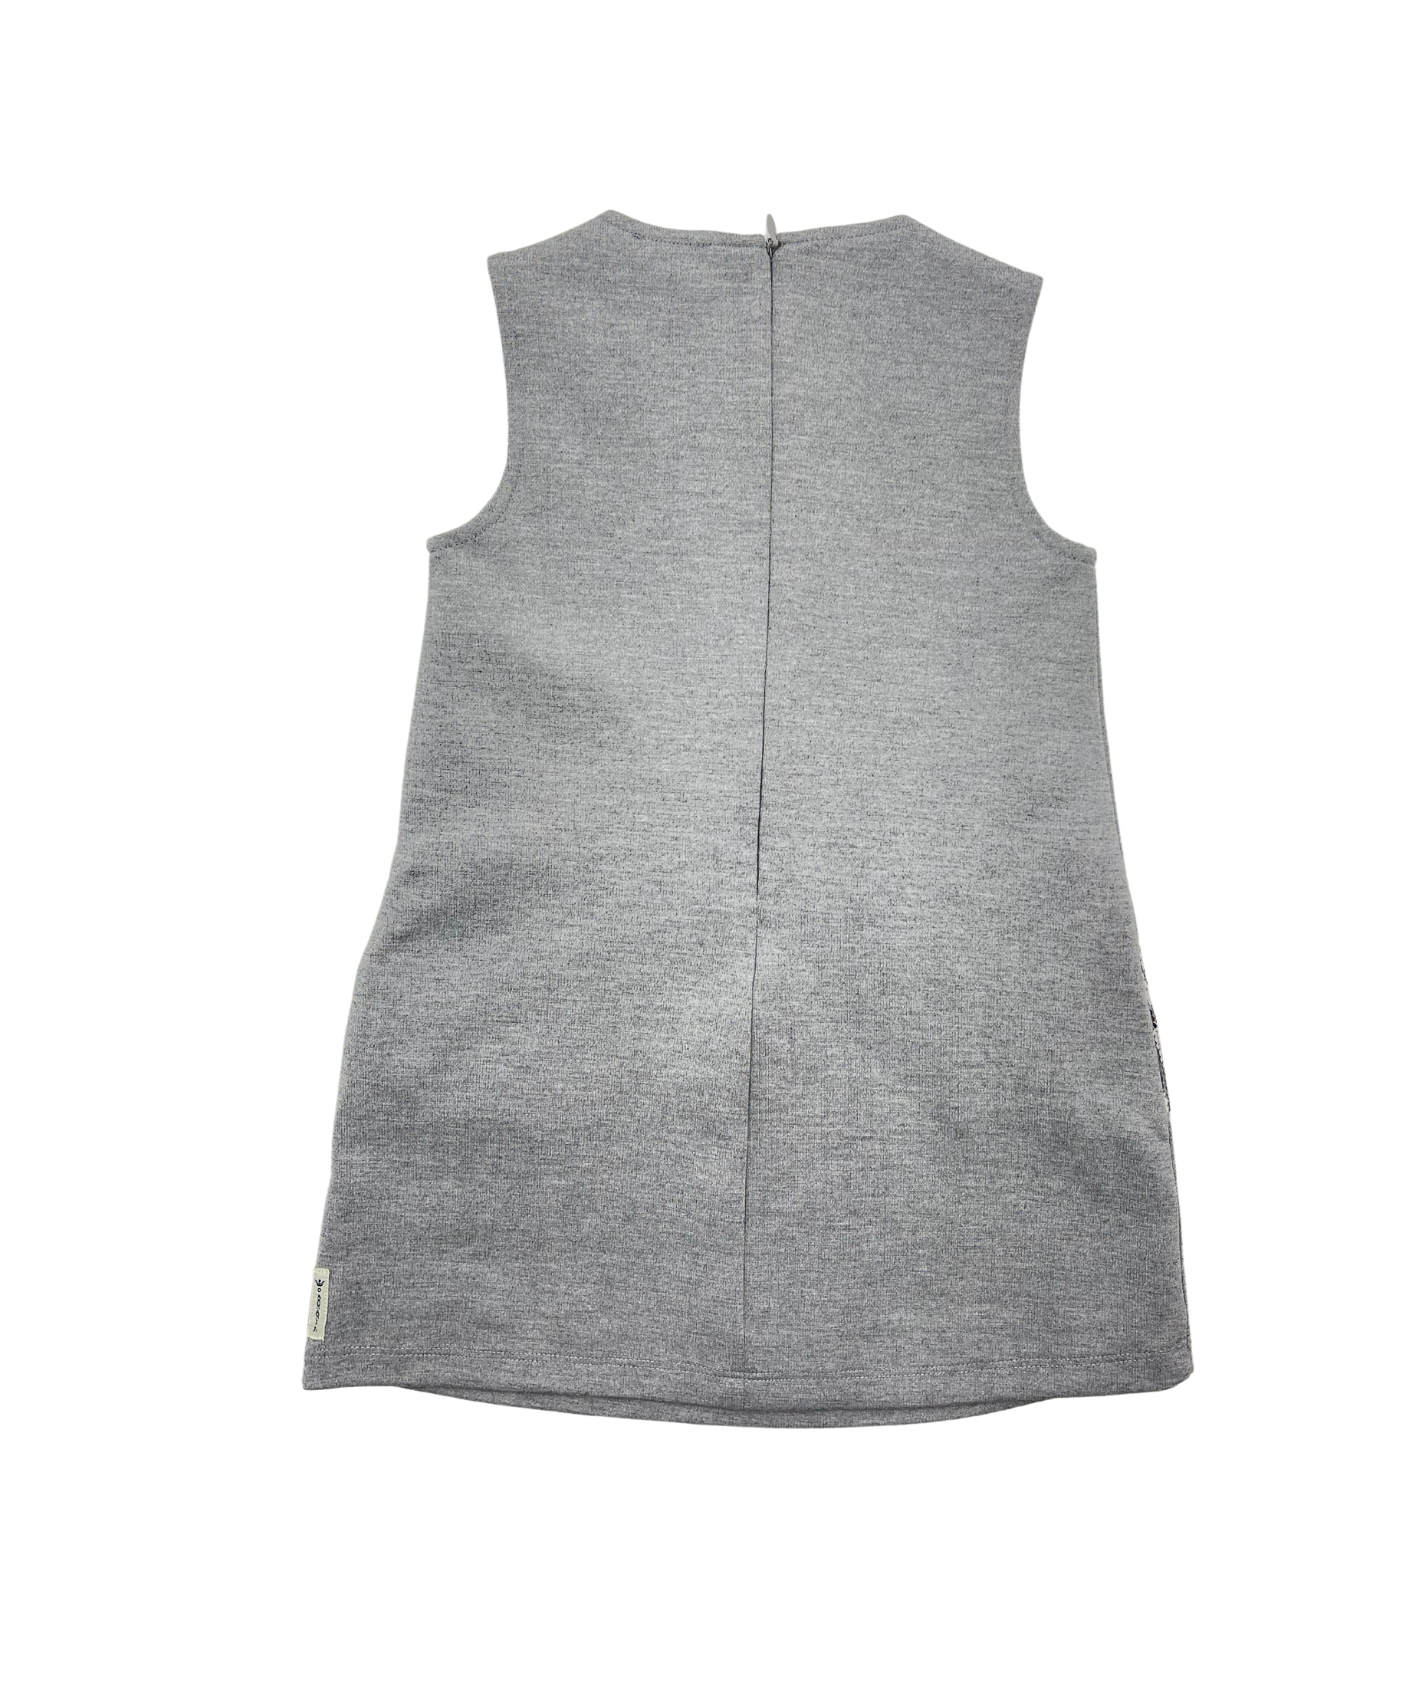 ARMANI - Robe grise avec poches à paillettes - 4 ans